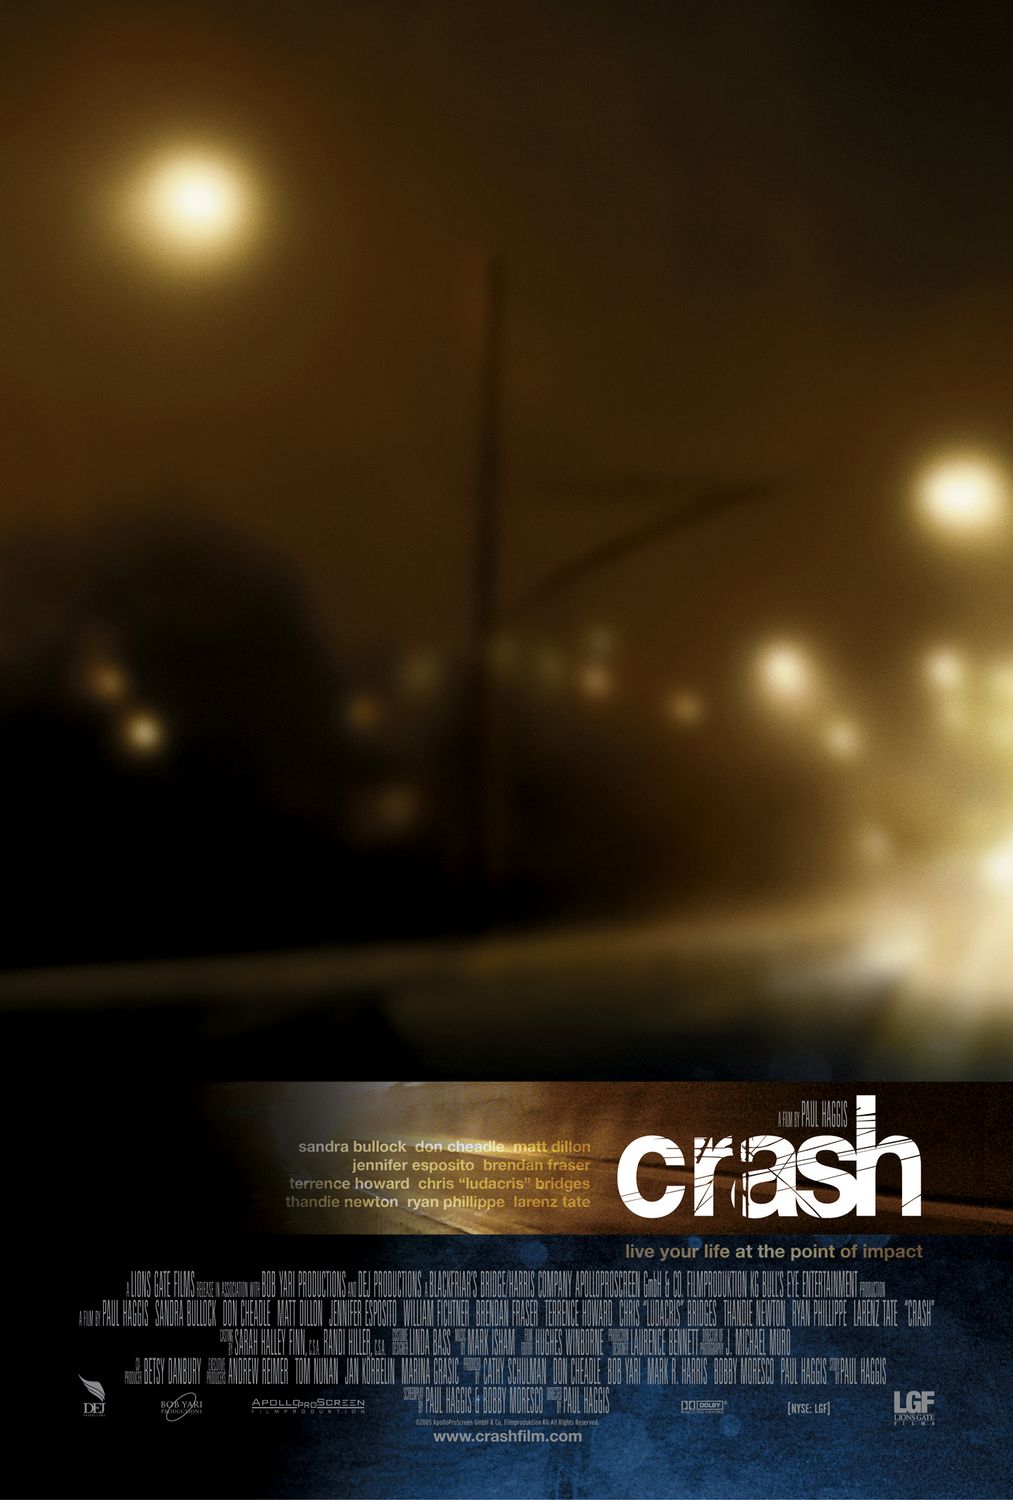 Crash (2004) Movie Trivia - ProProfs Quiz